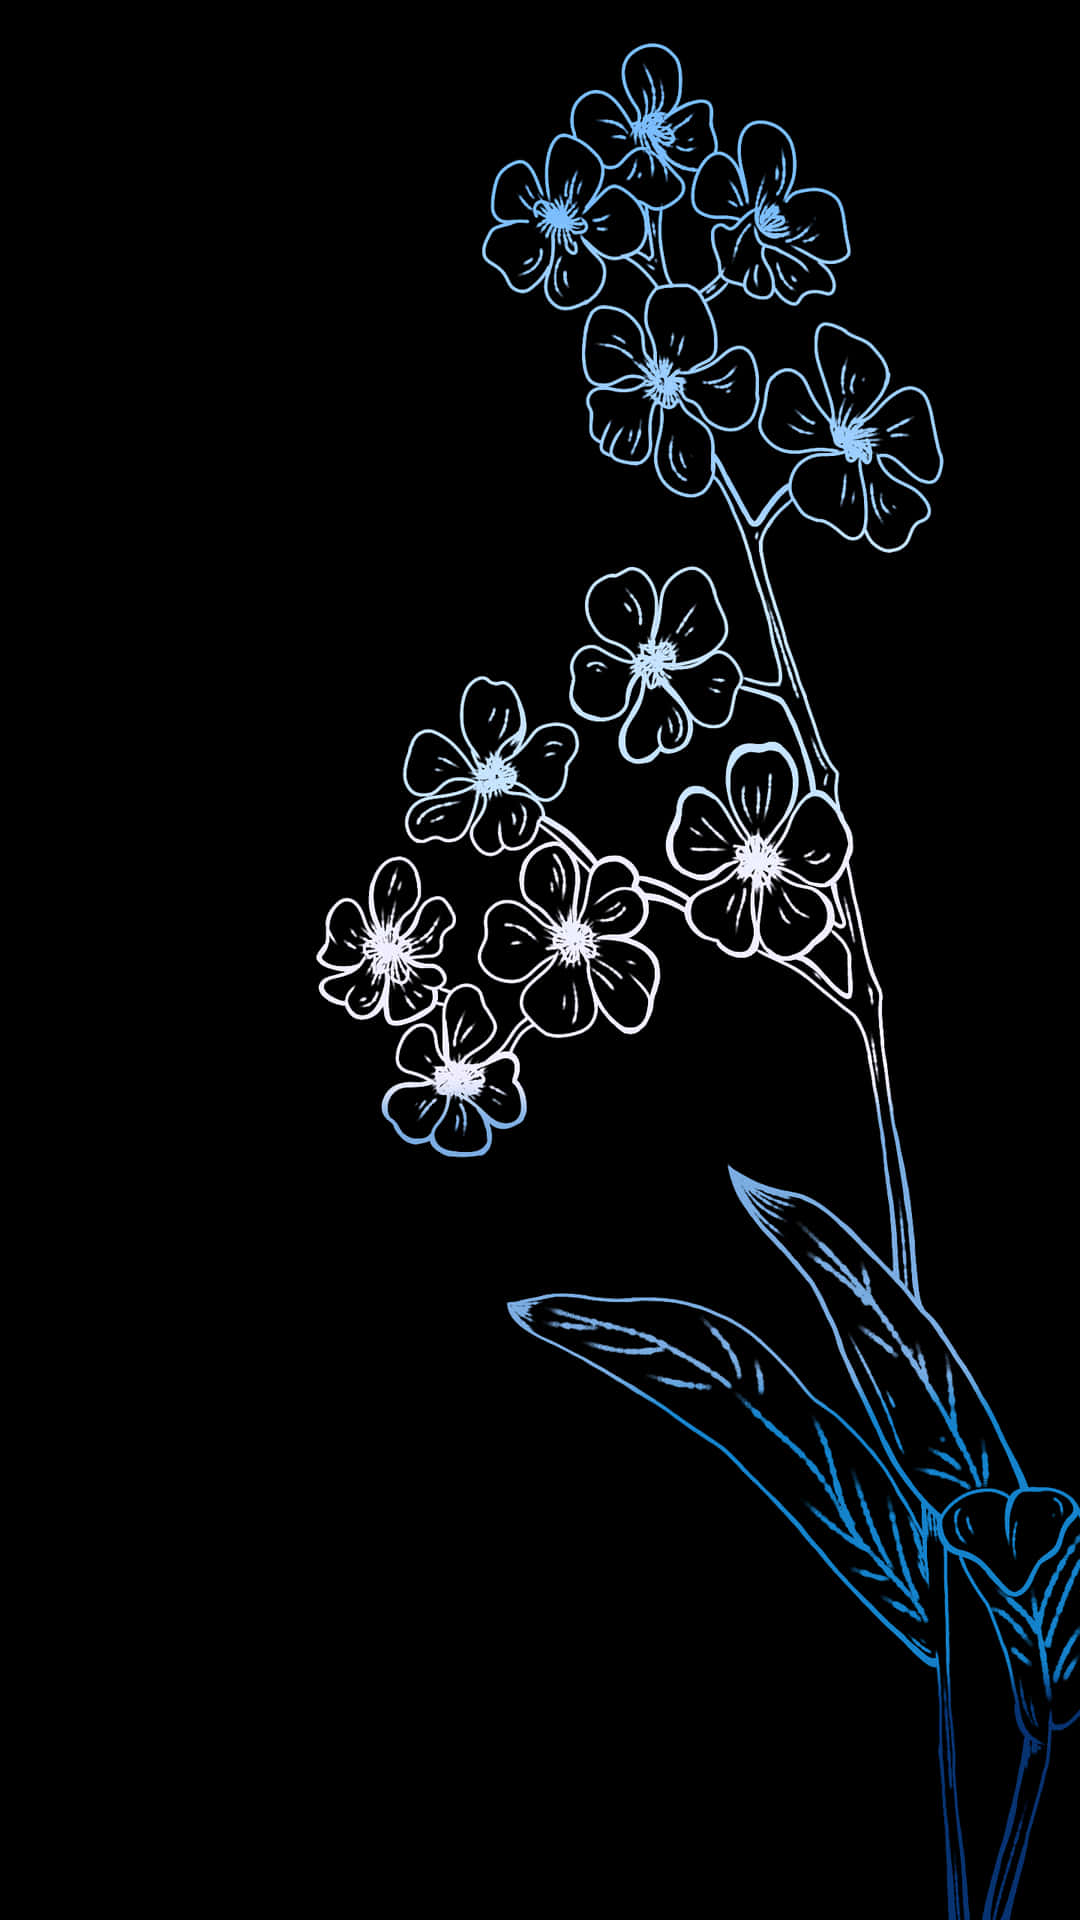 Einschwarzer Hintergrund Mit Einer Blauen Blume. Wallpaper